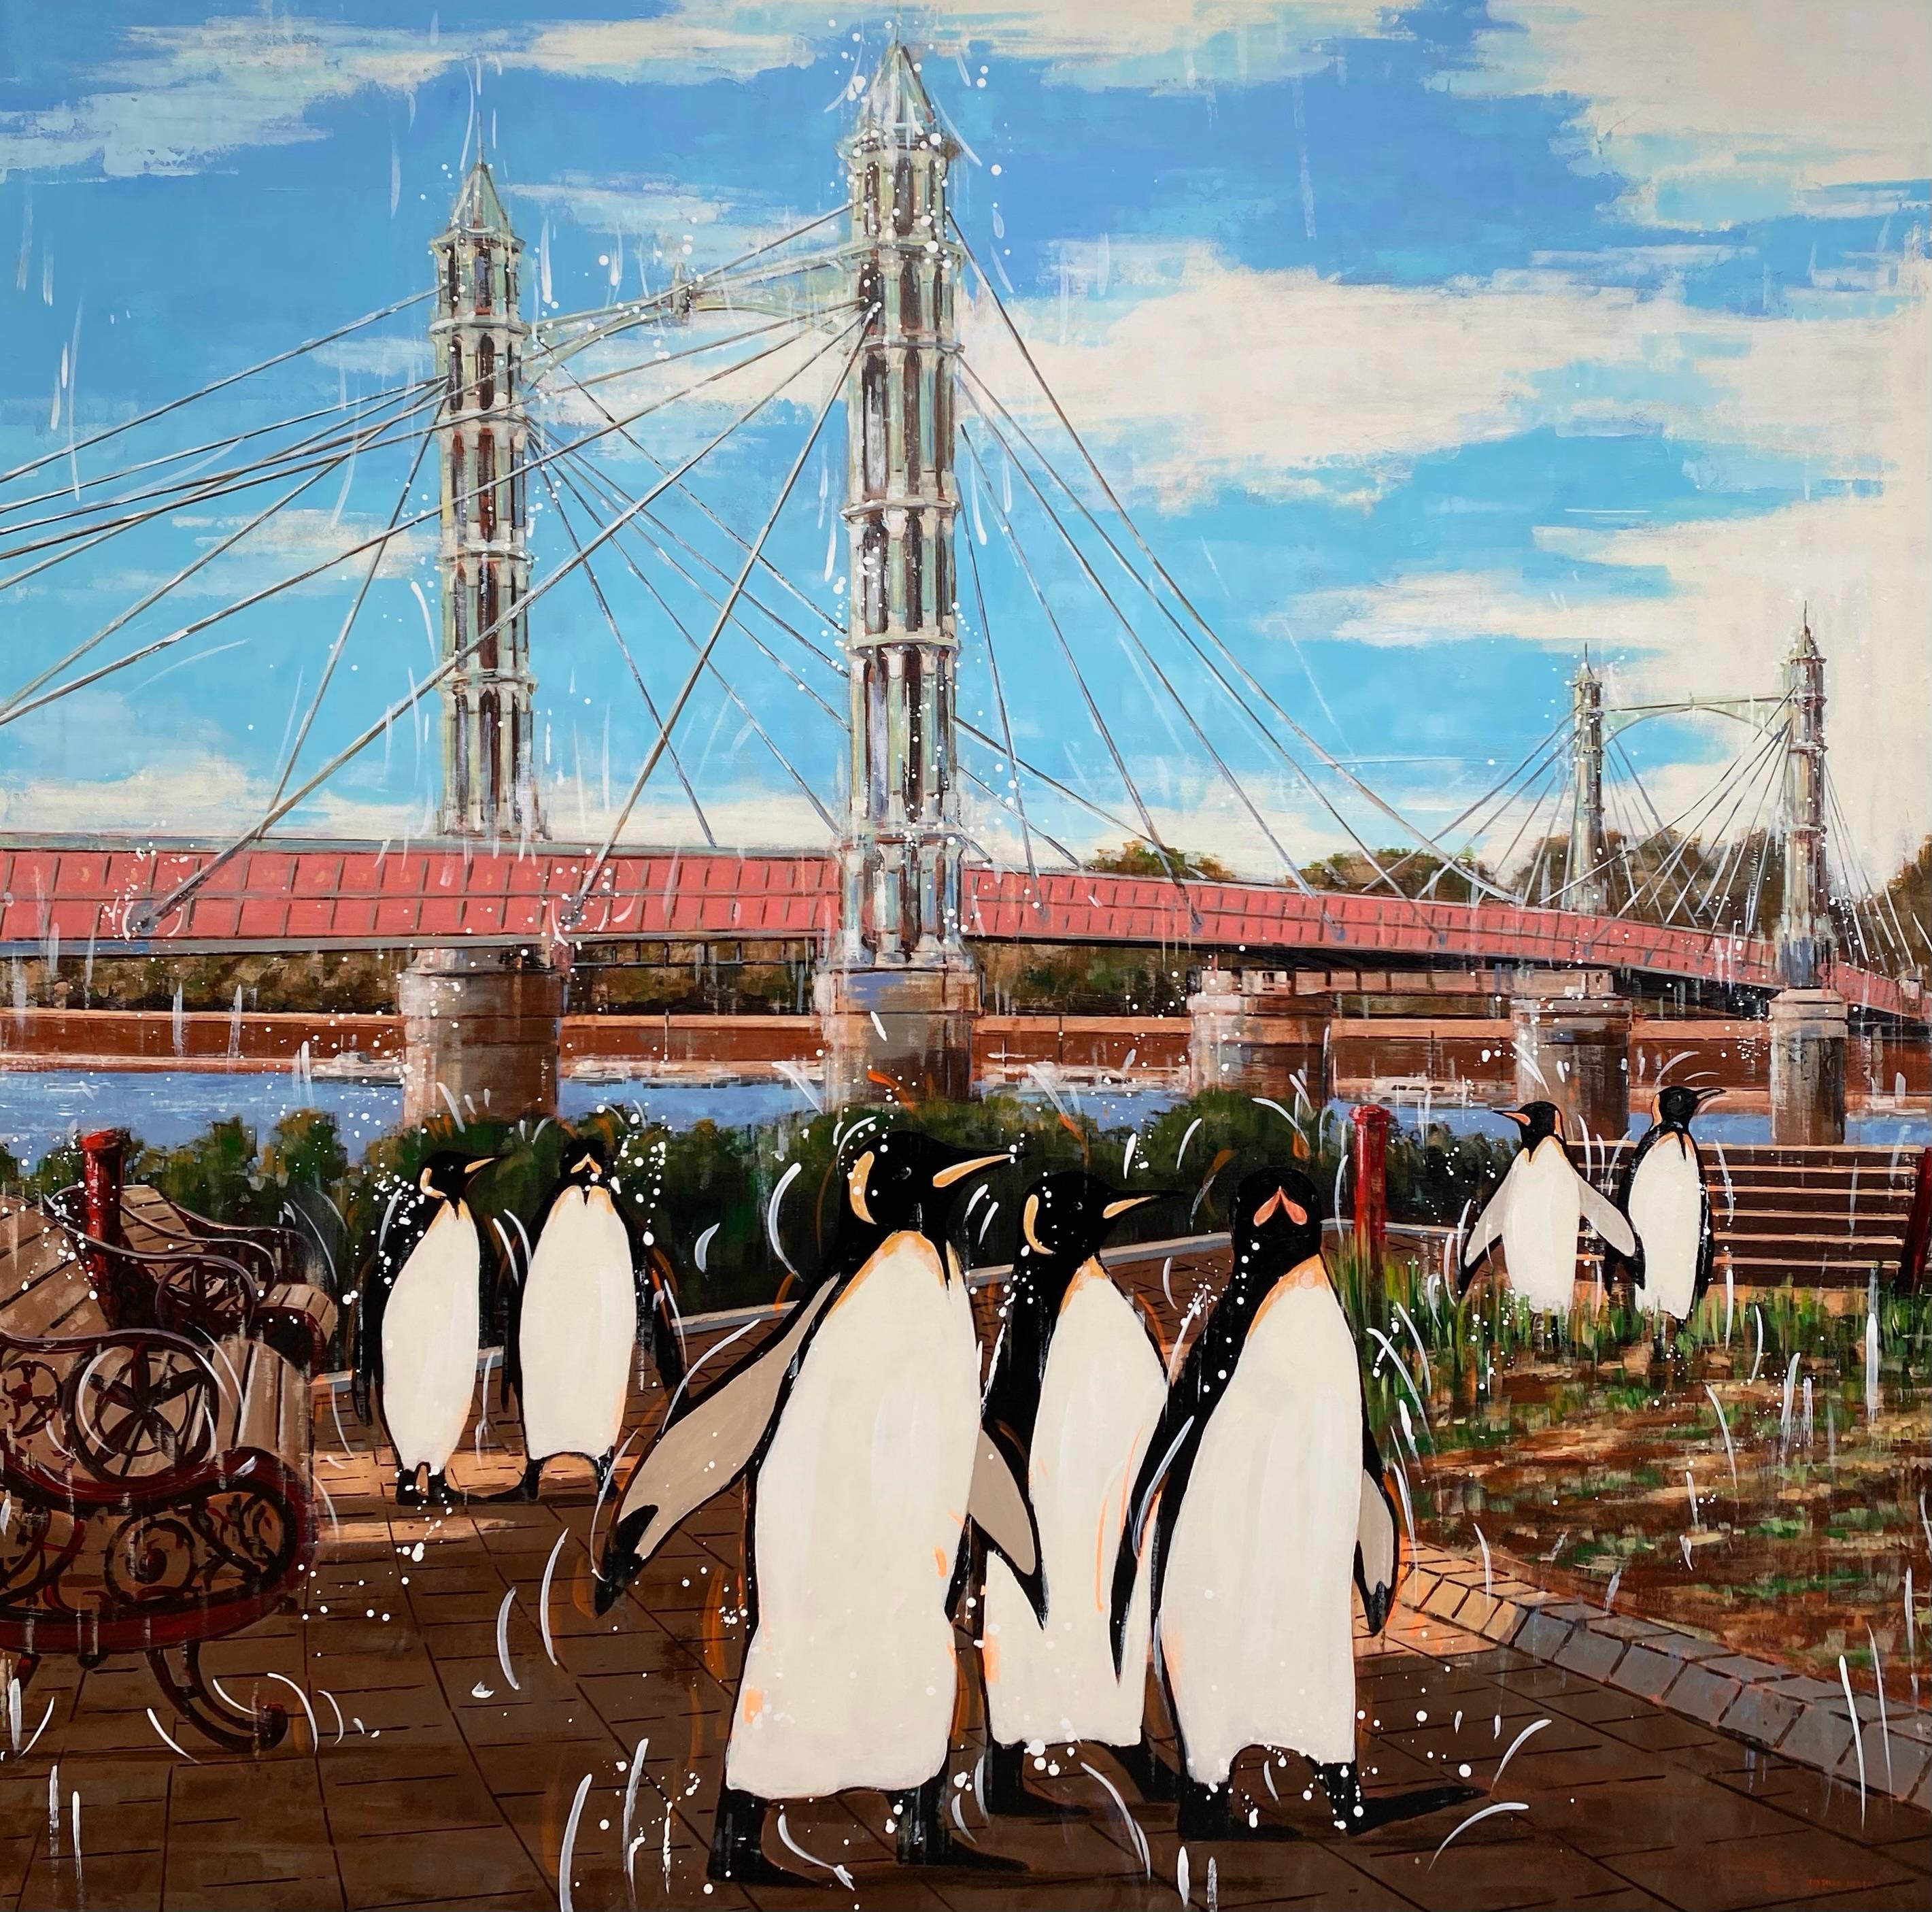 Animal Painting Nathan Neven - Empereurs et Albert Bridge - peinture à l'huile surréaliste d'animaux sauvages - art moderne